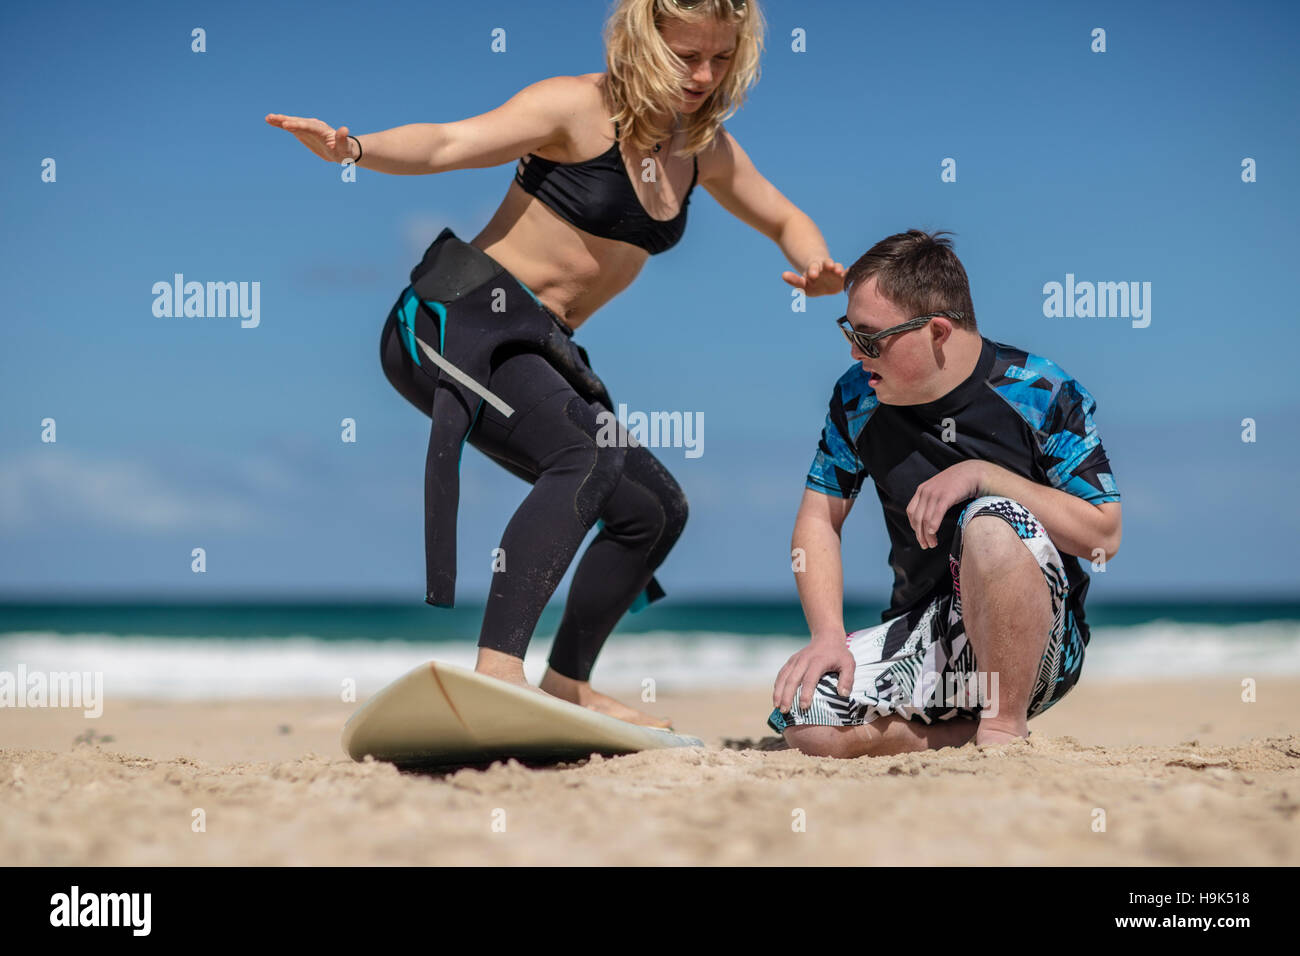 Teenage boy with down syndrome ayant cours de surf sur la plage Banque D'Images